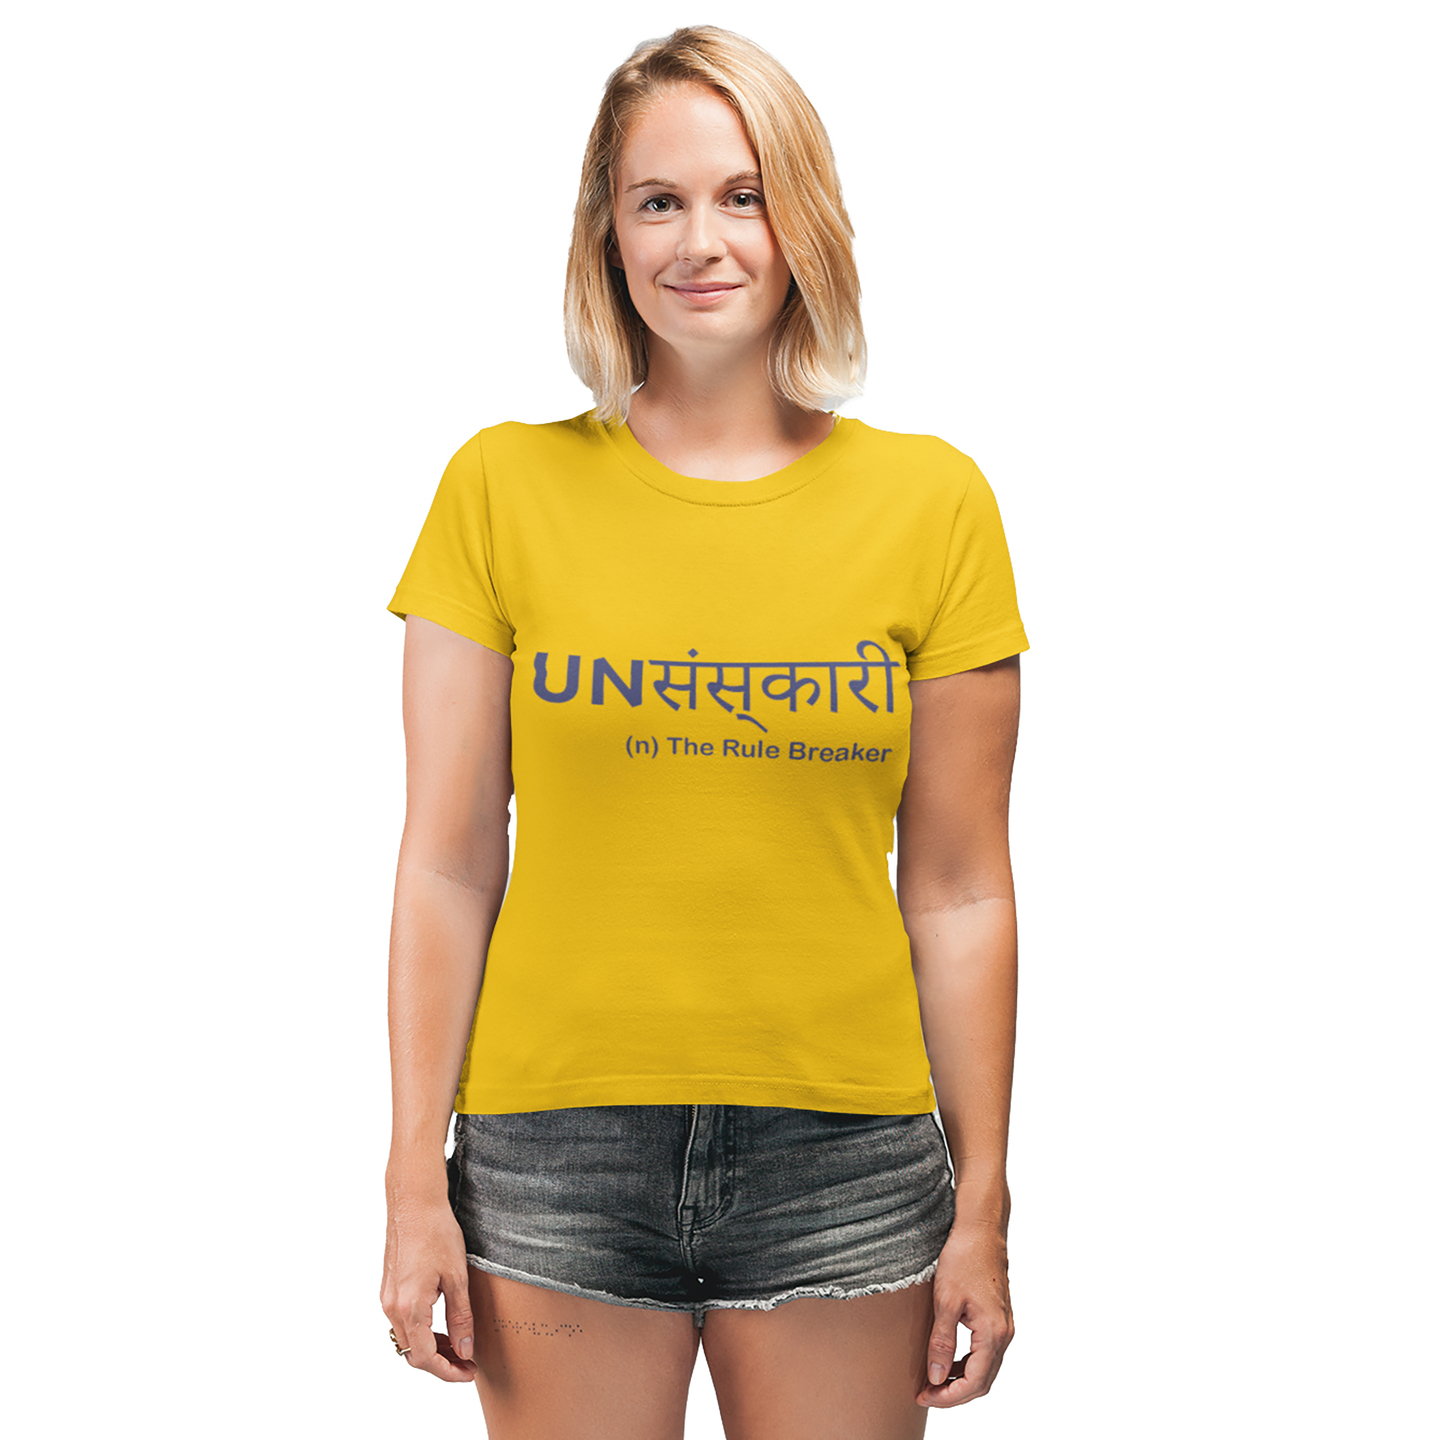 Unsanskari Printed Mustard Yellow Tshirt for Women